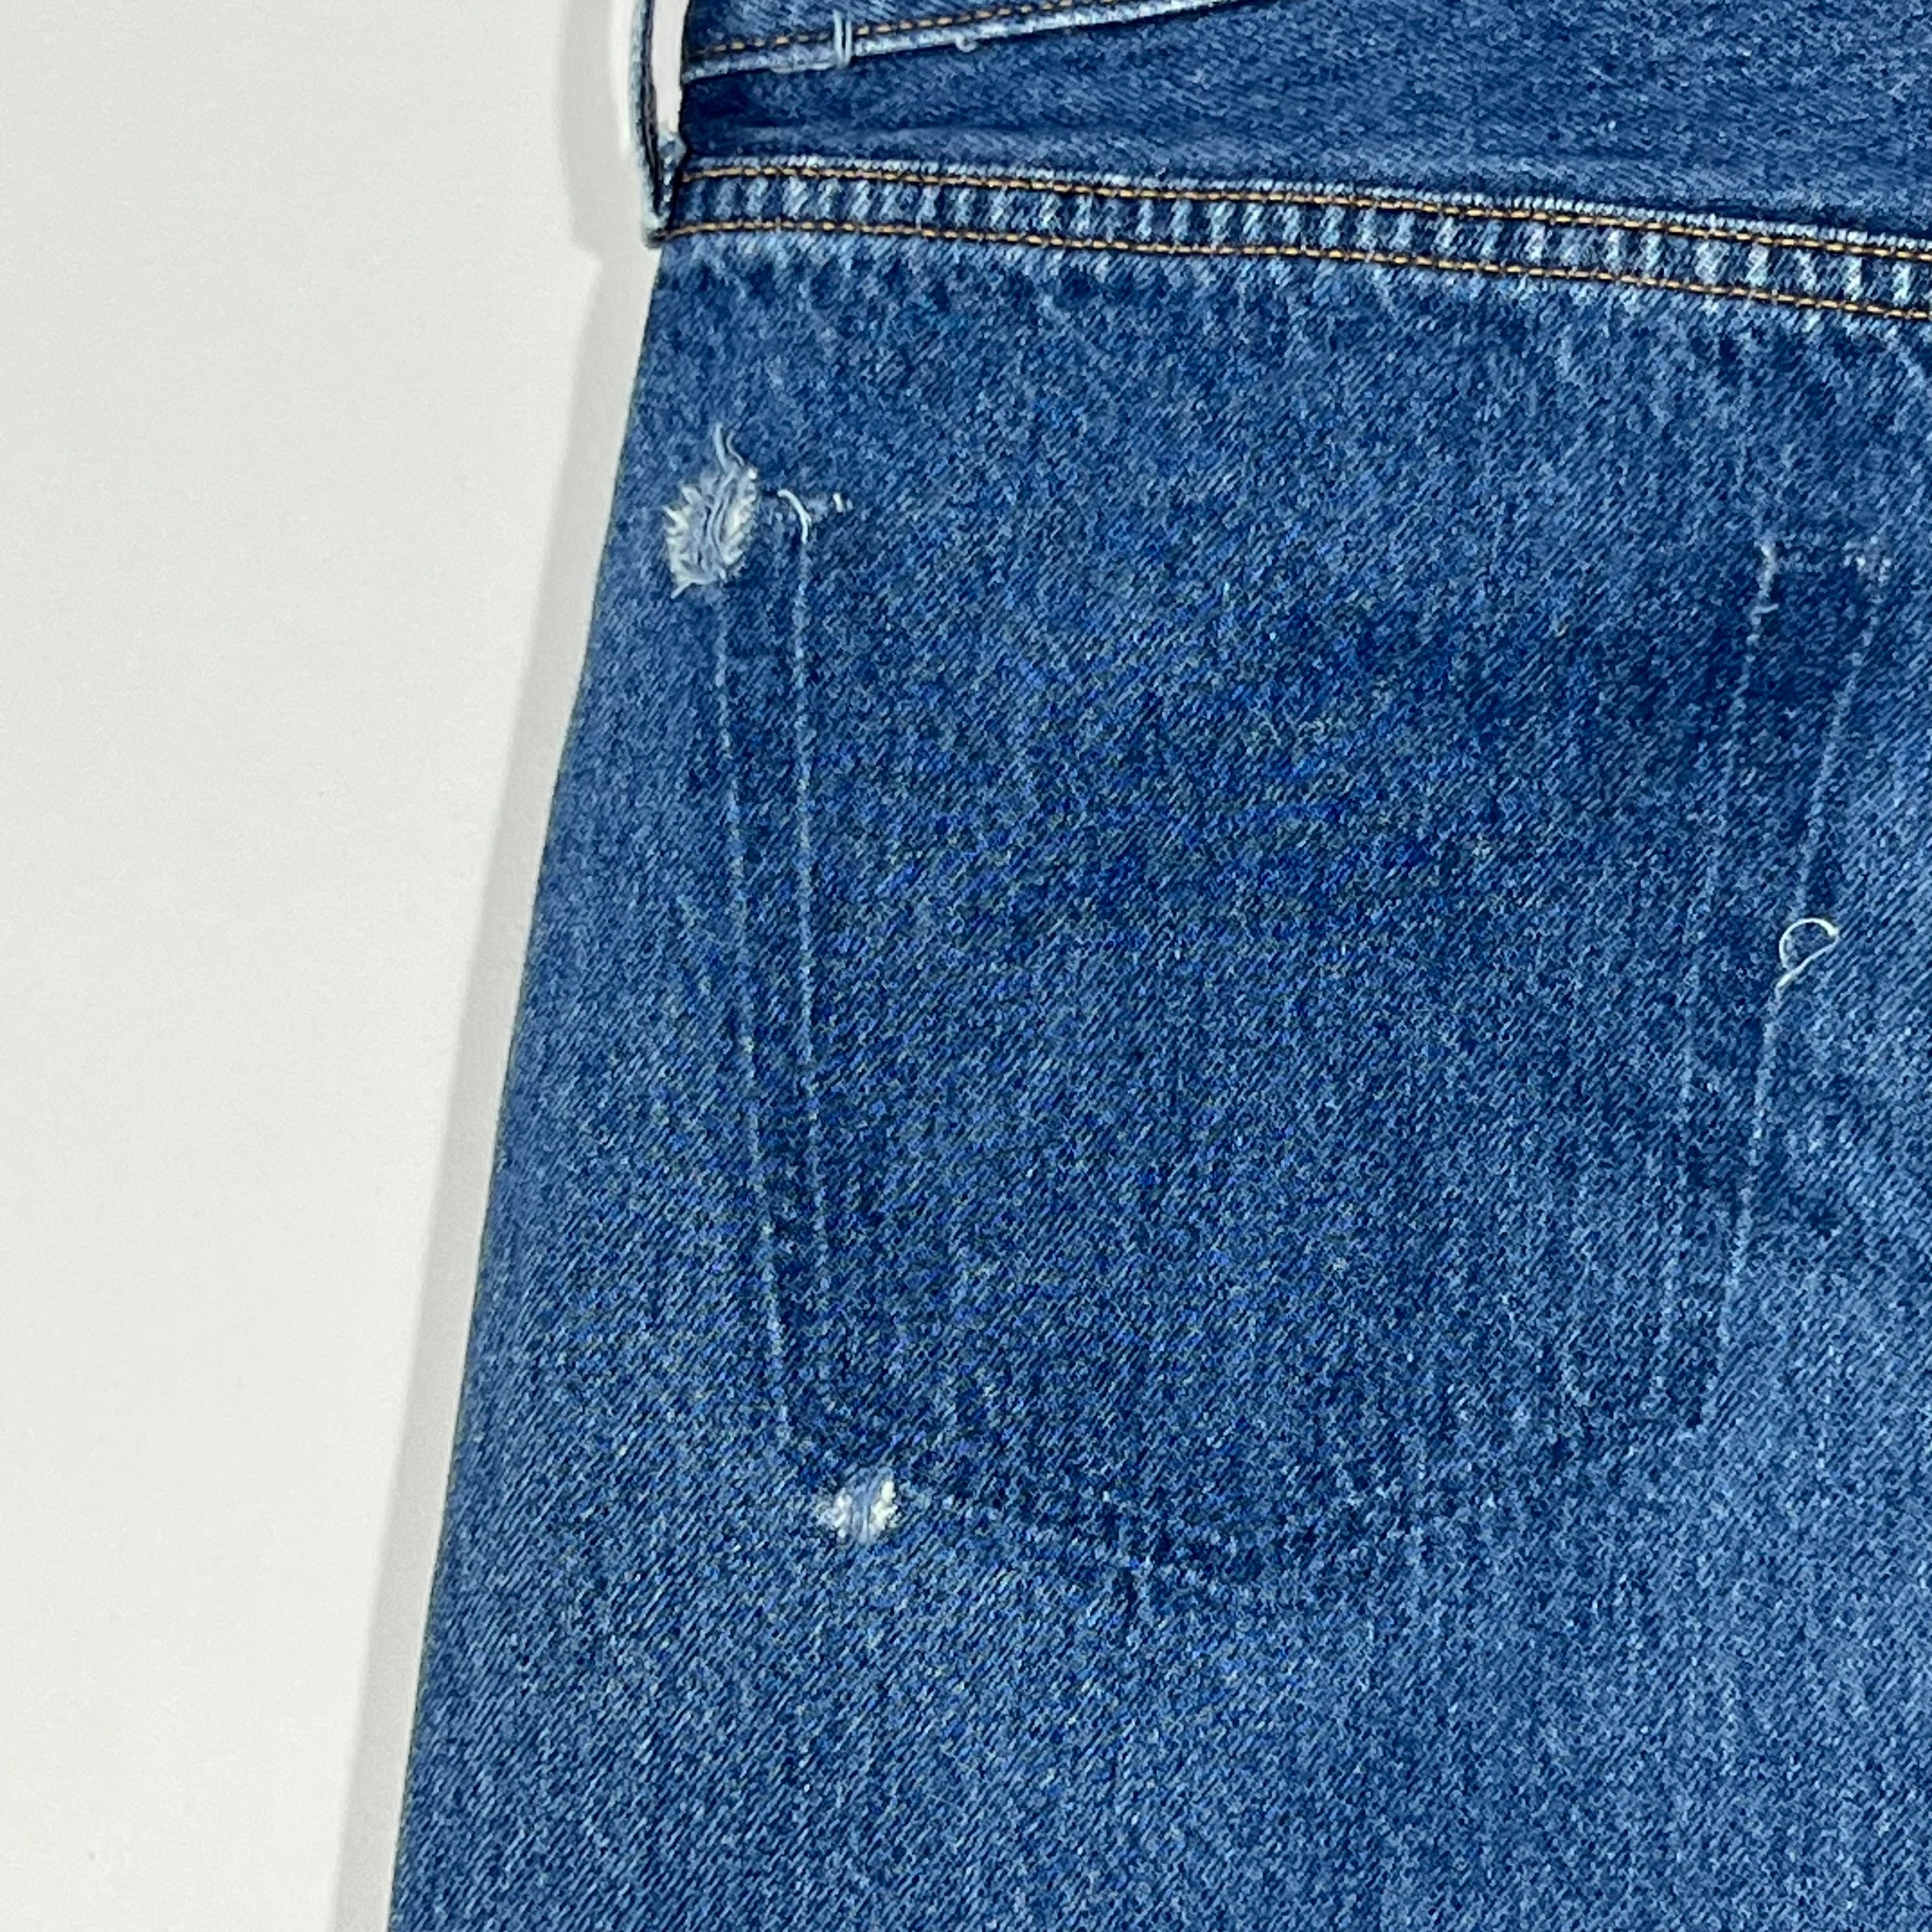 Vintage Levis 501 Jeans - Men's 38/32